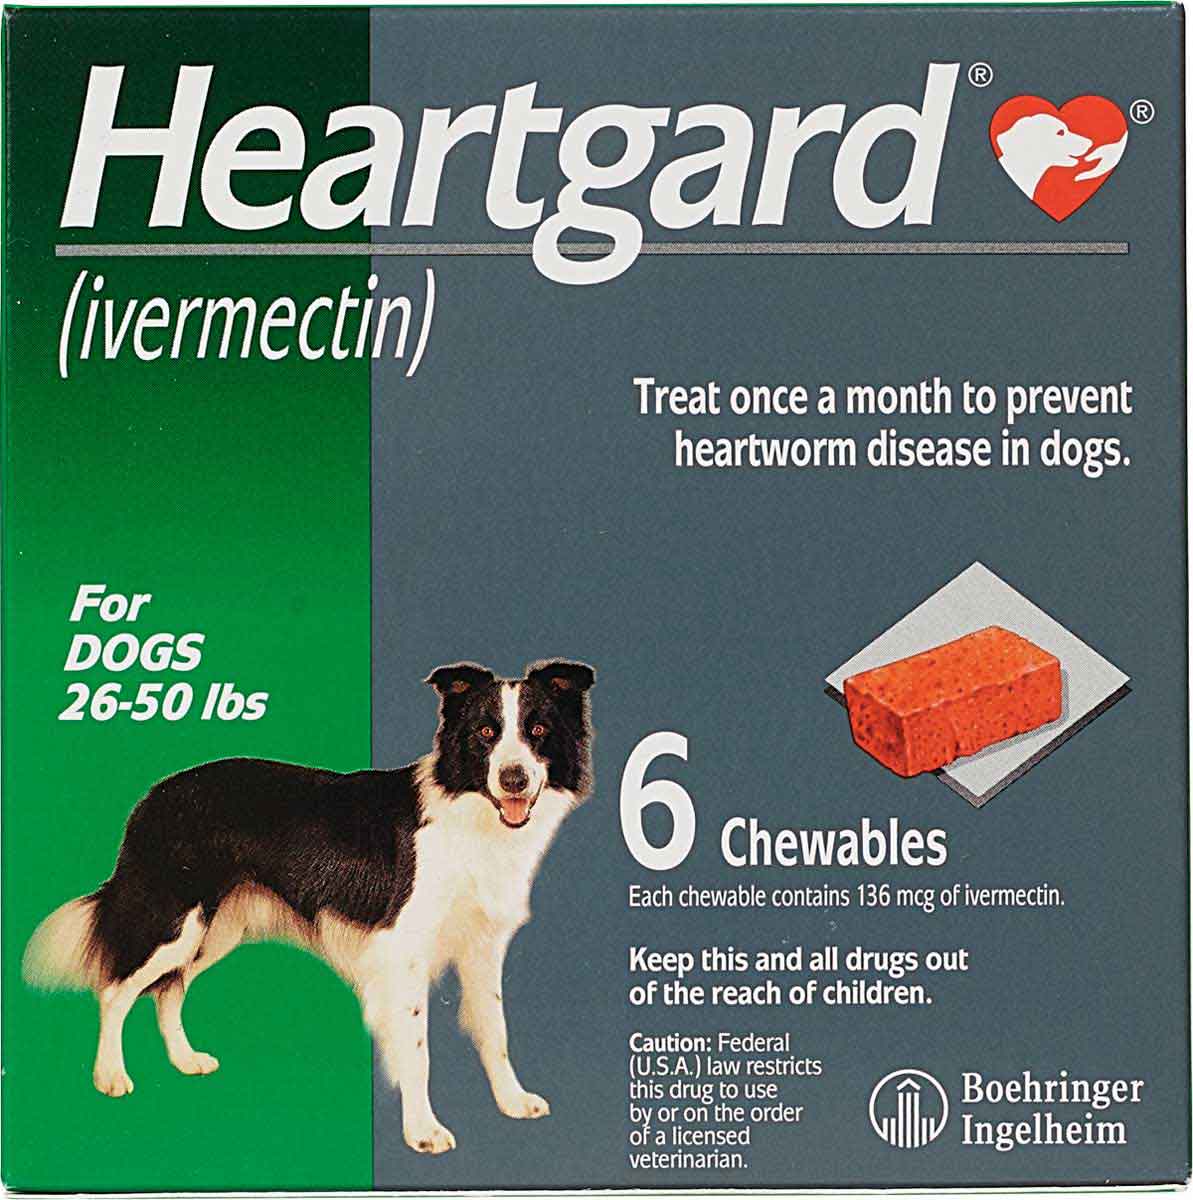 heartgard-for-dogs-boehringer-ingelheim-safe-pharmacy-heartworm